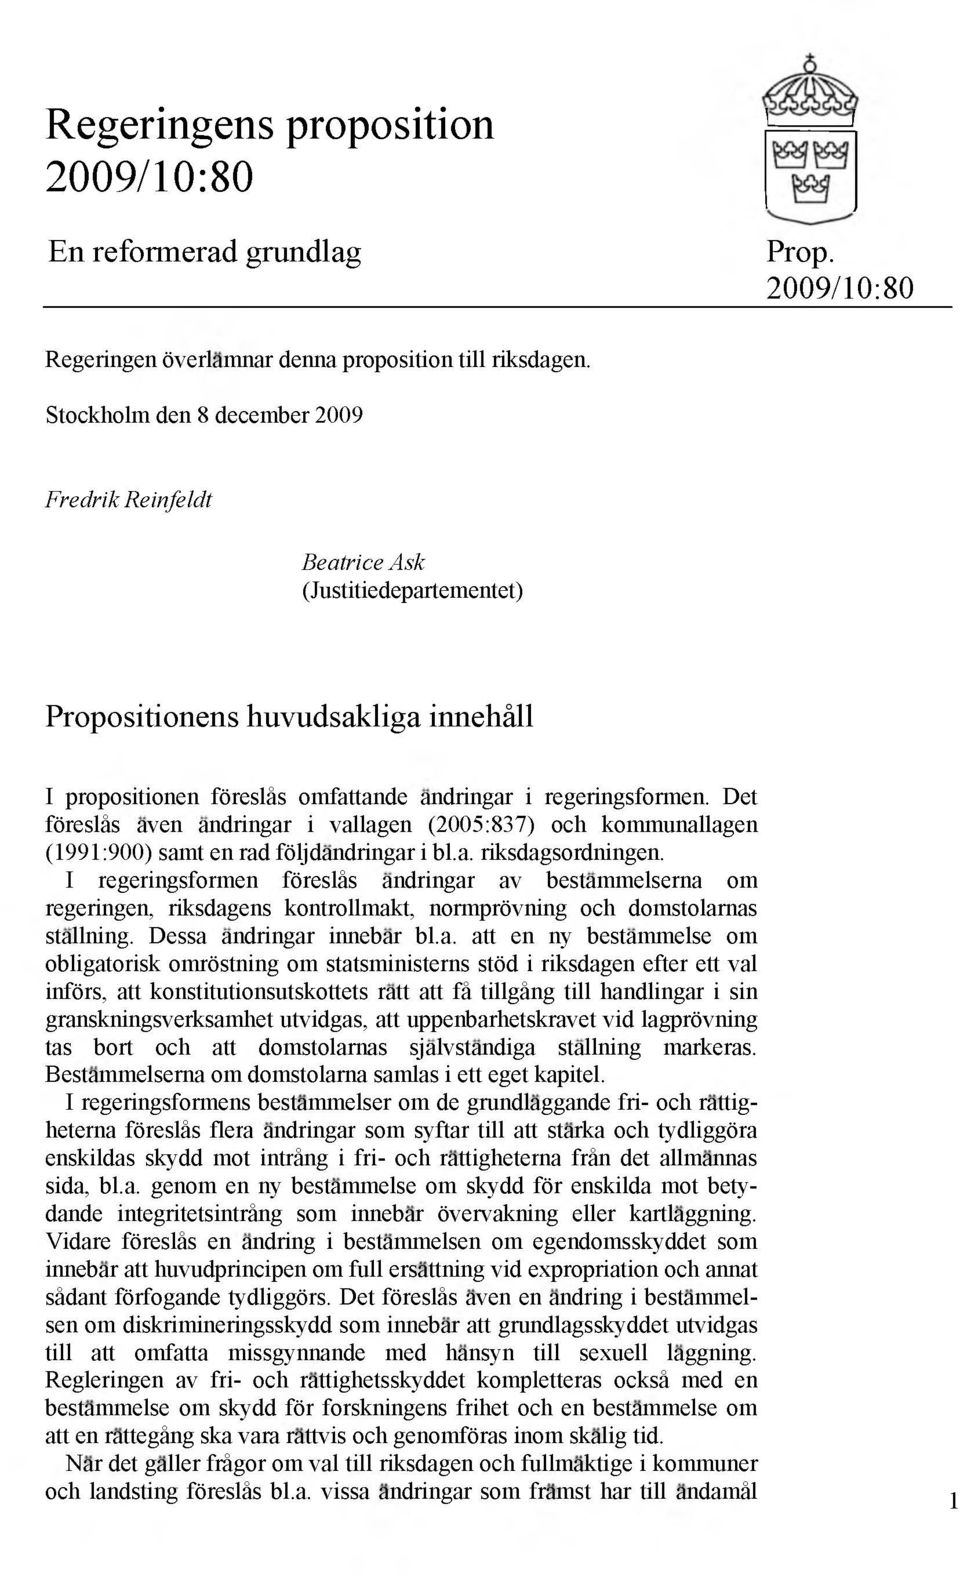 Det föreslás aven andringar i vallagen (2005:837) och kommunallagen (1991:900) samt en rad följdandringar i bl.a. riksdagsordningen.